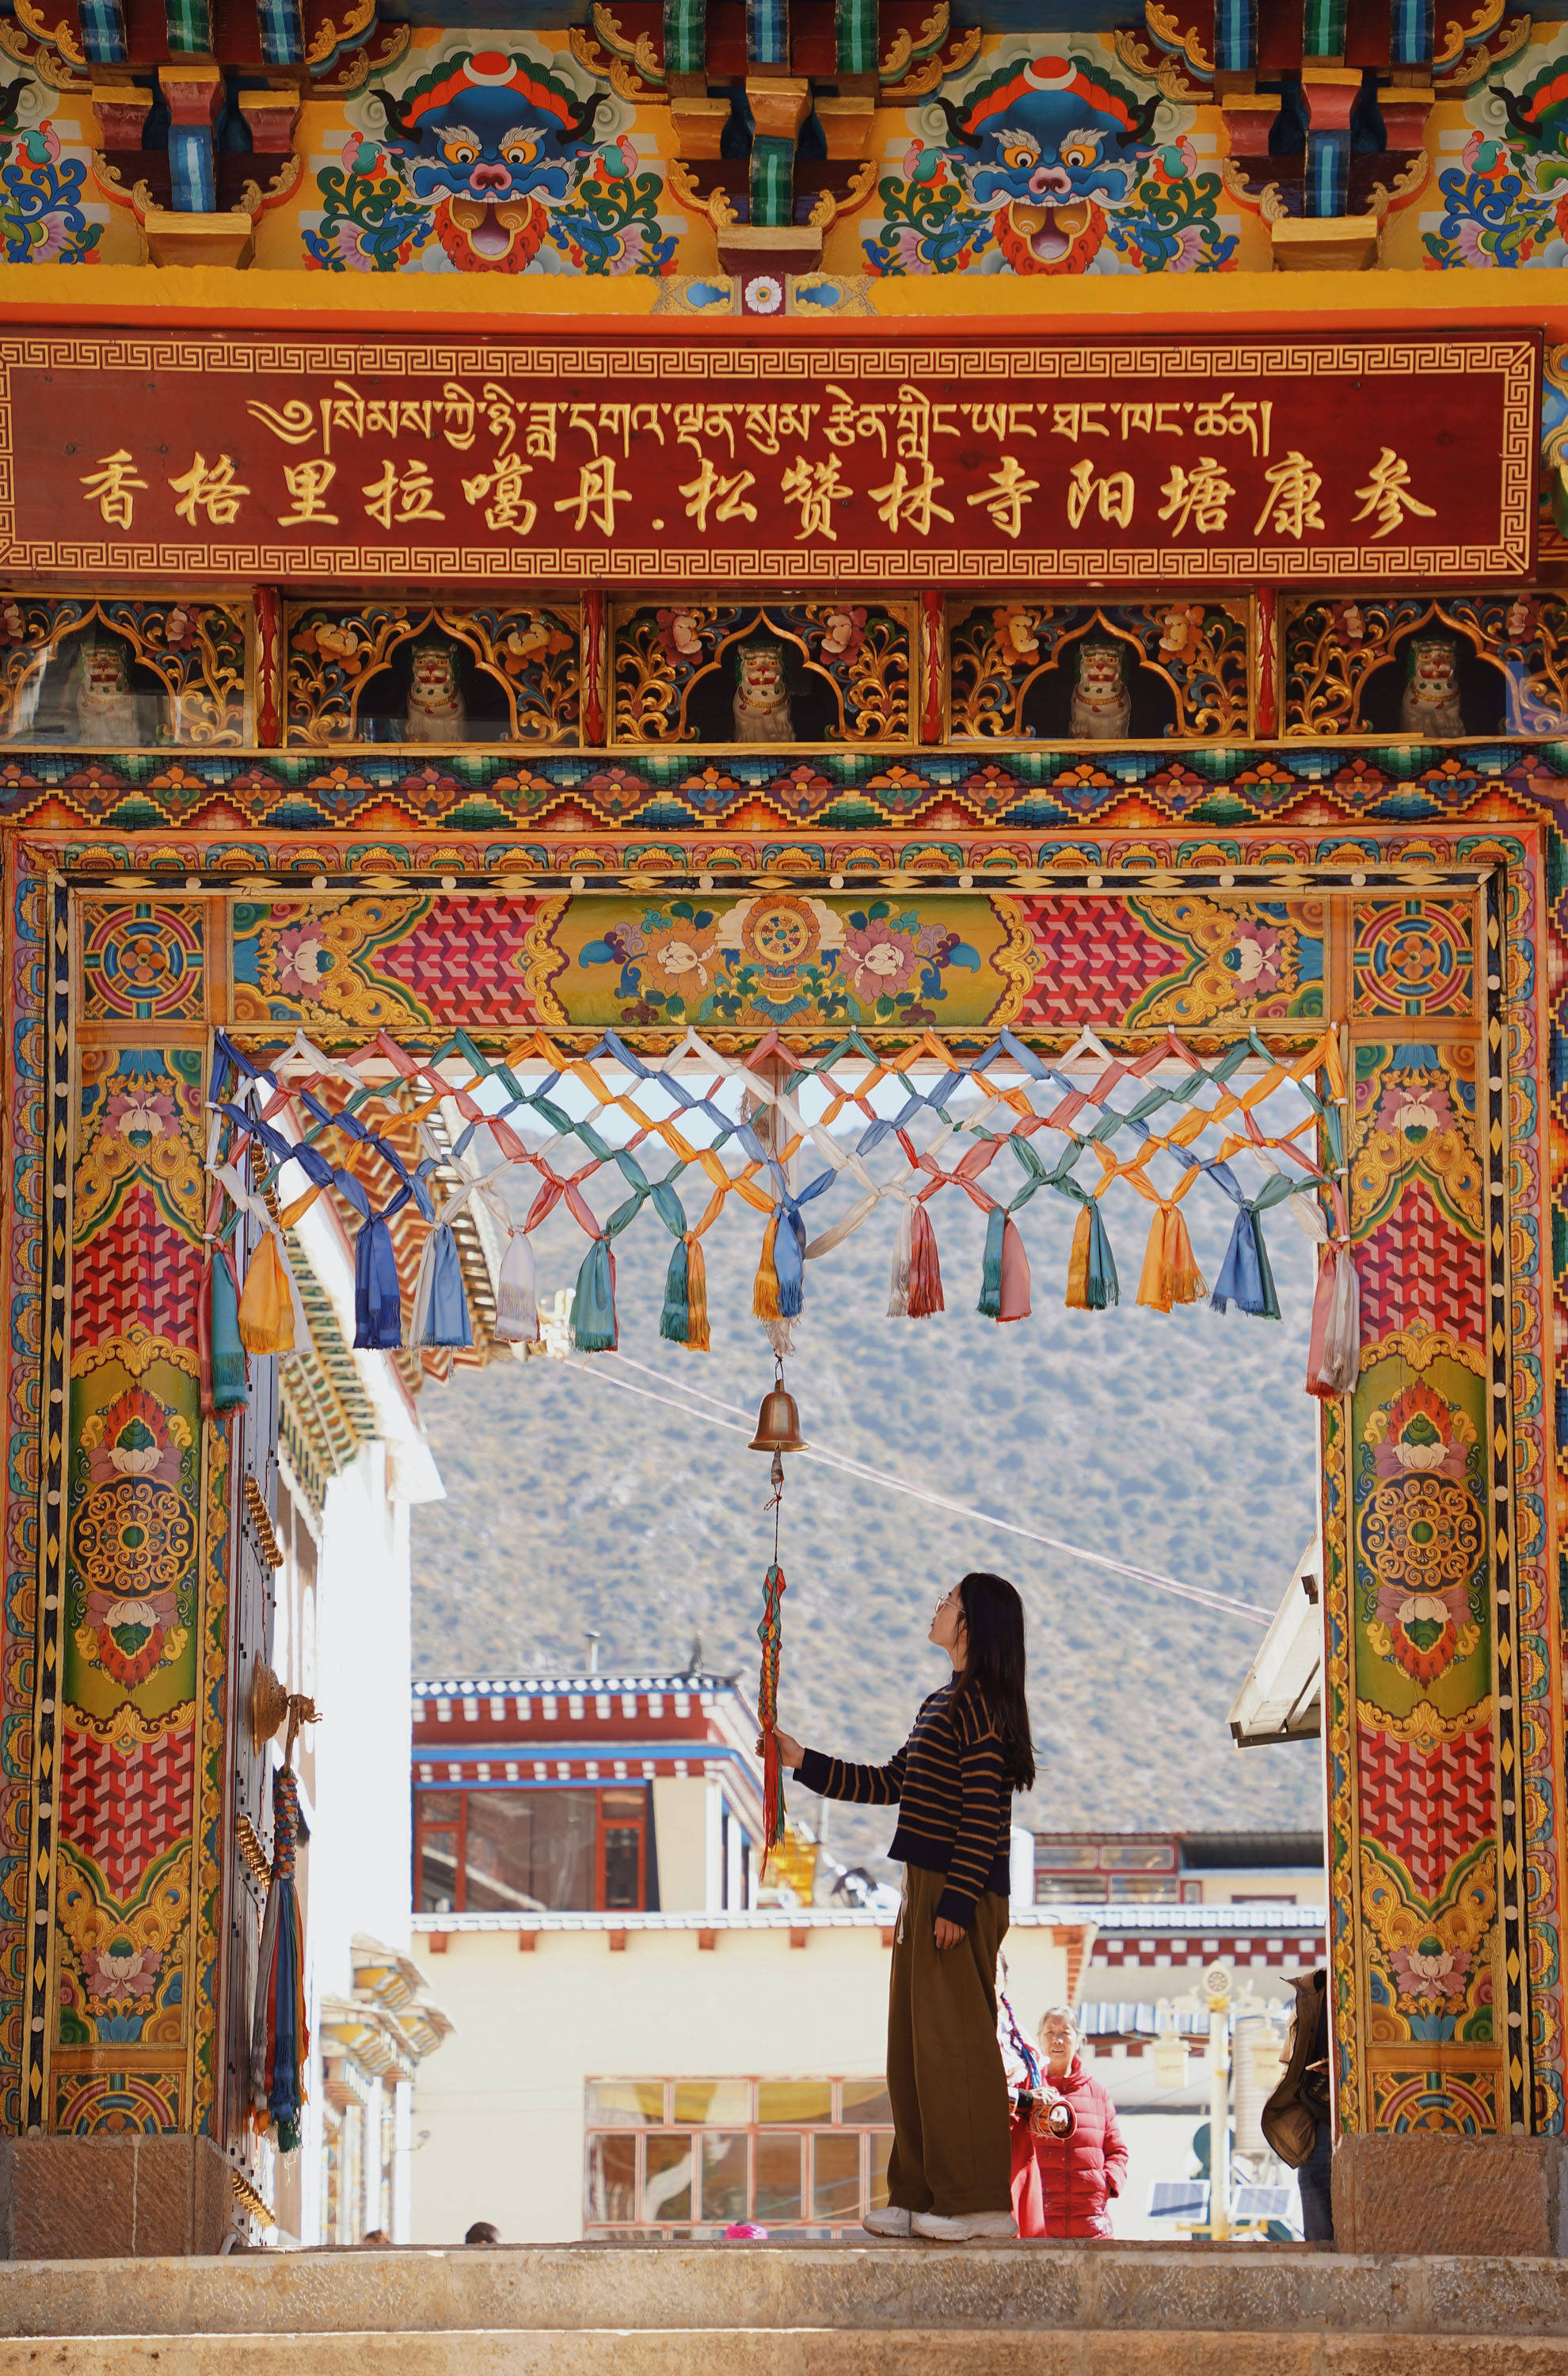 它是云南省最大的藏传佛寺之一,被誉为小布达拉宫,游人如织